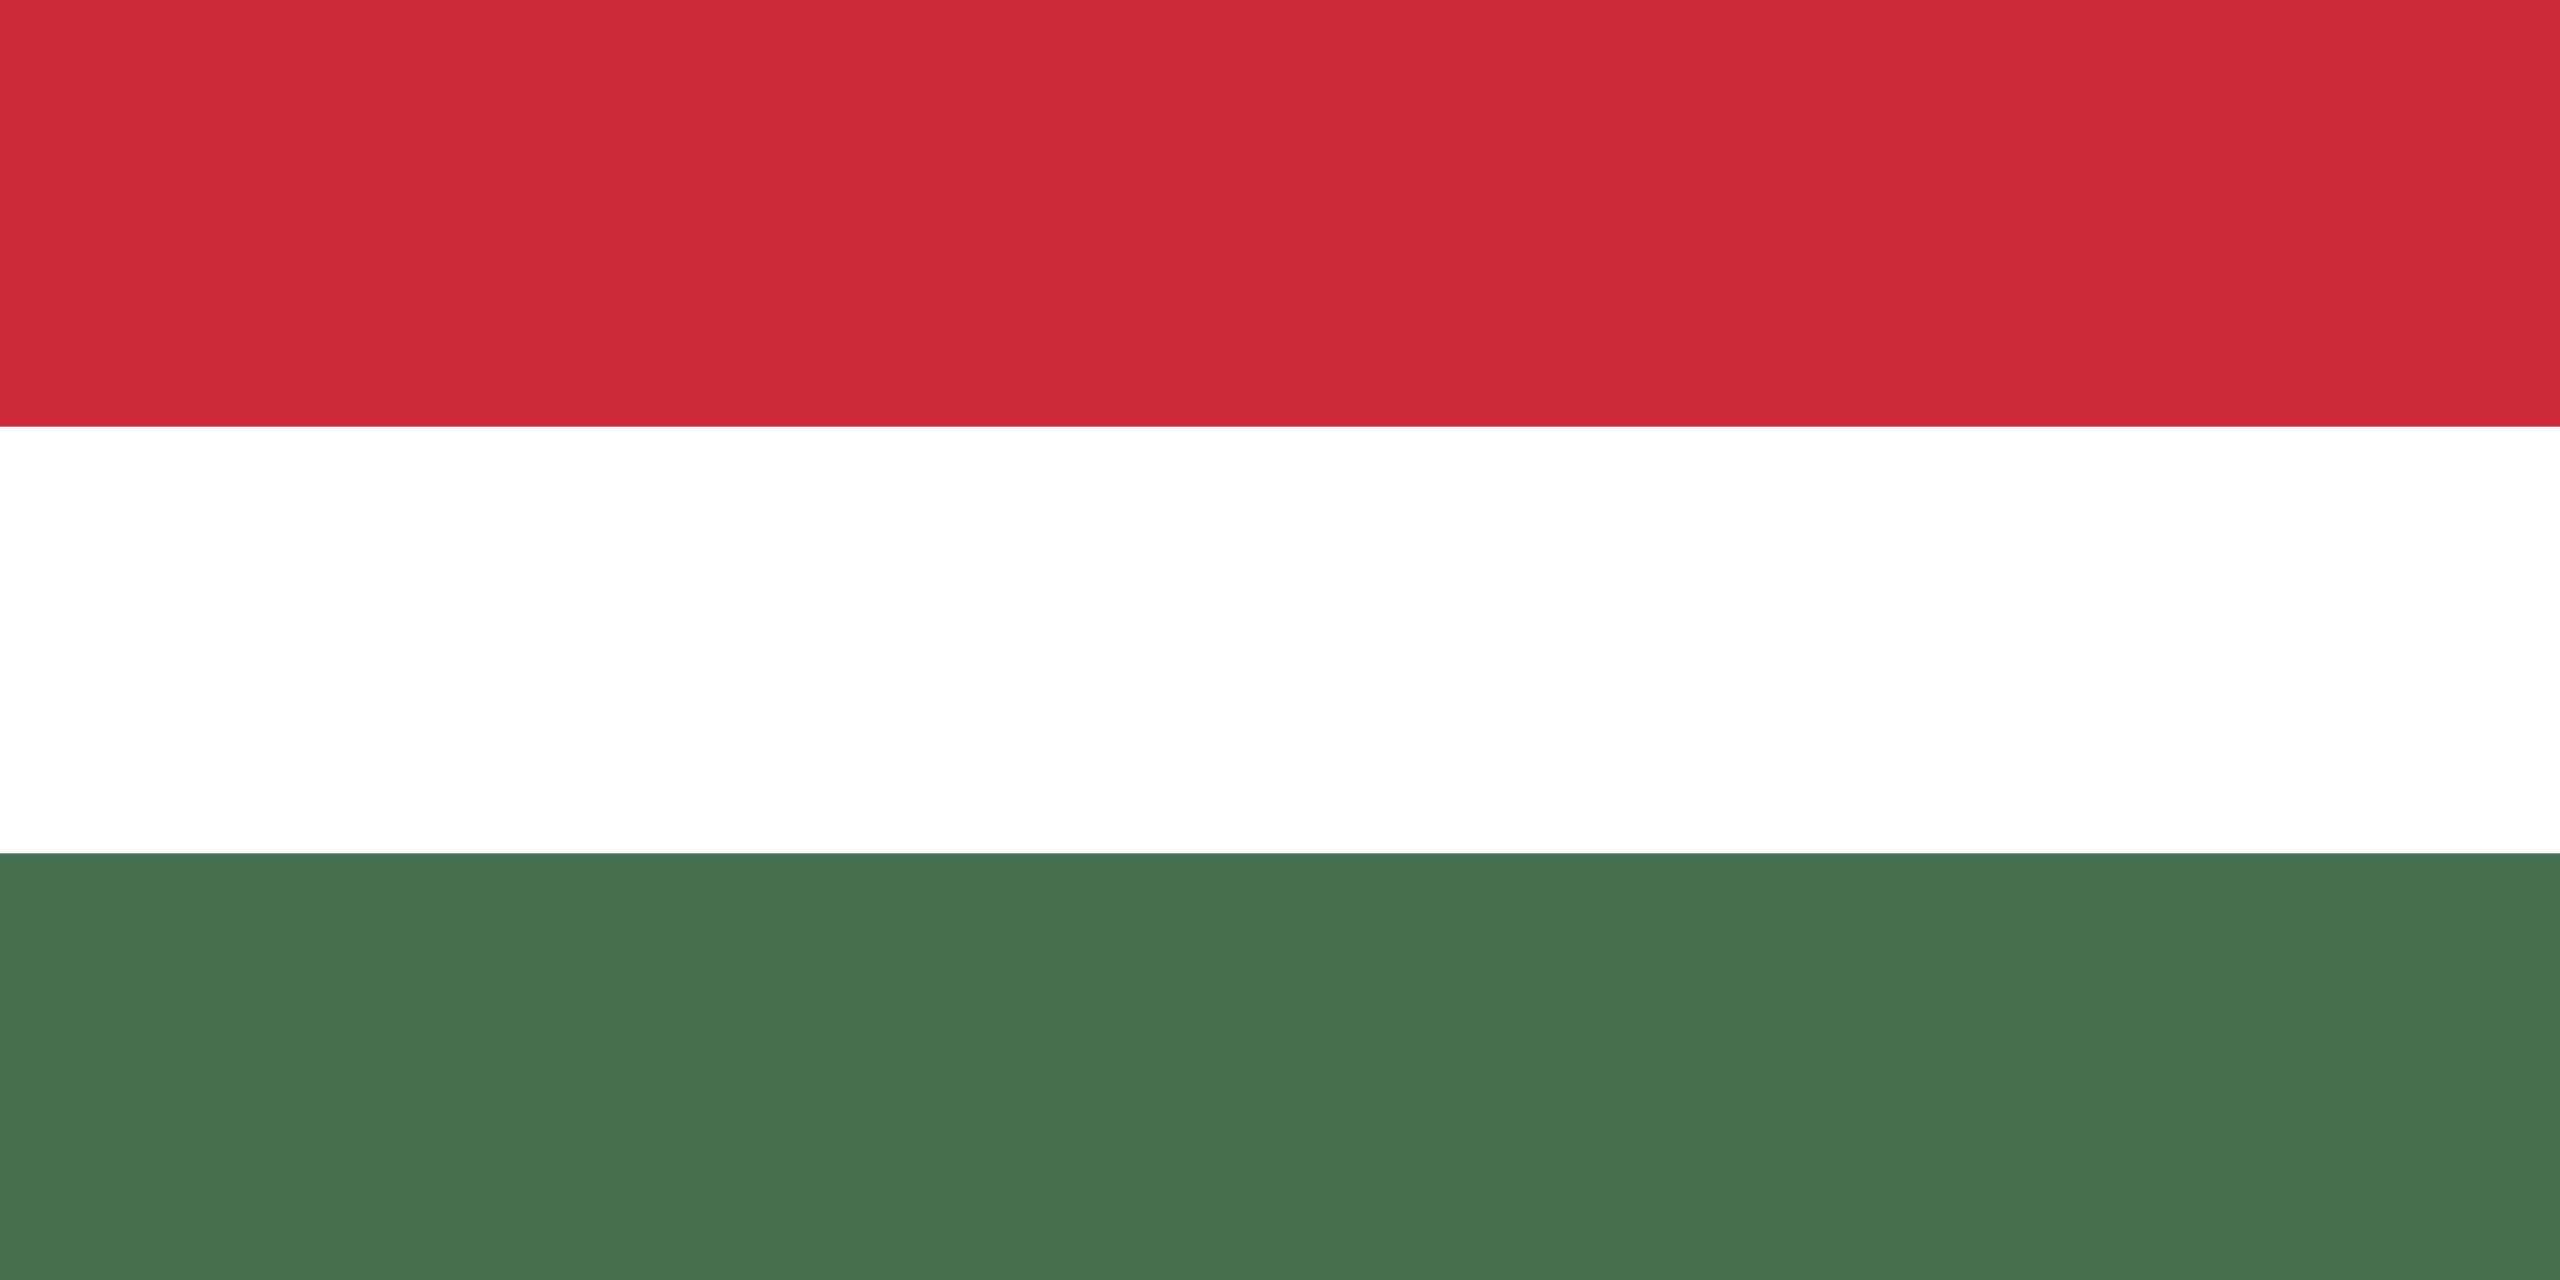 Magyar nyelvű források